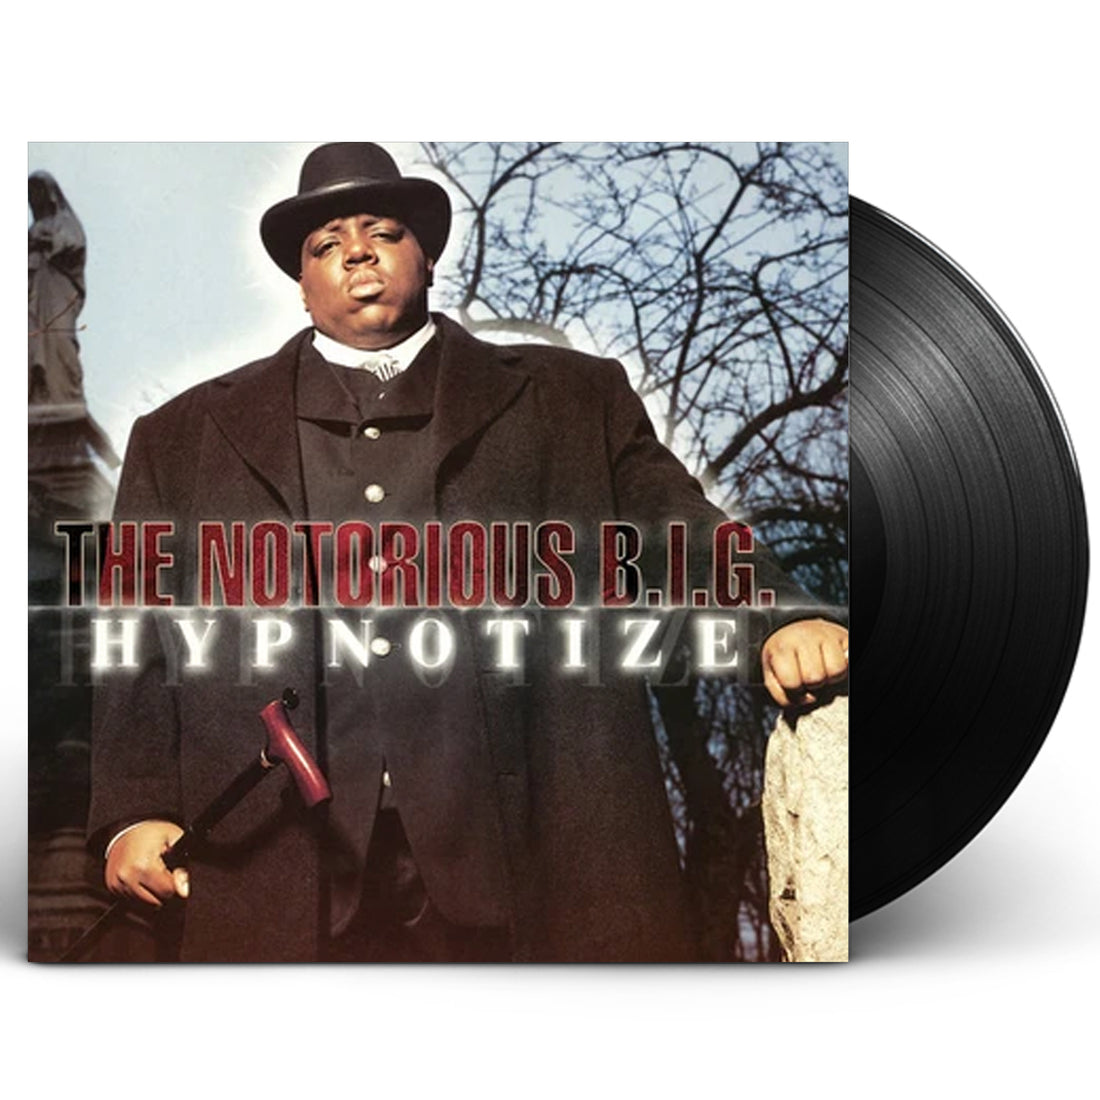 The Notorious B.I.G. "Hypnotize" 12" Vinyl